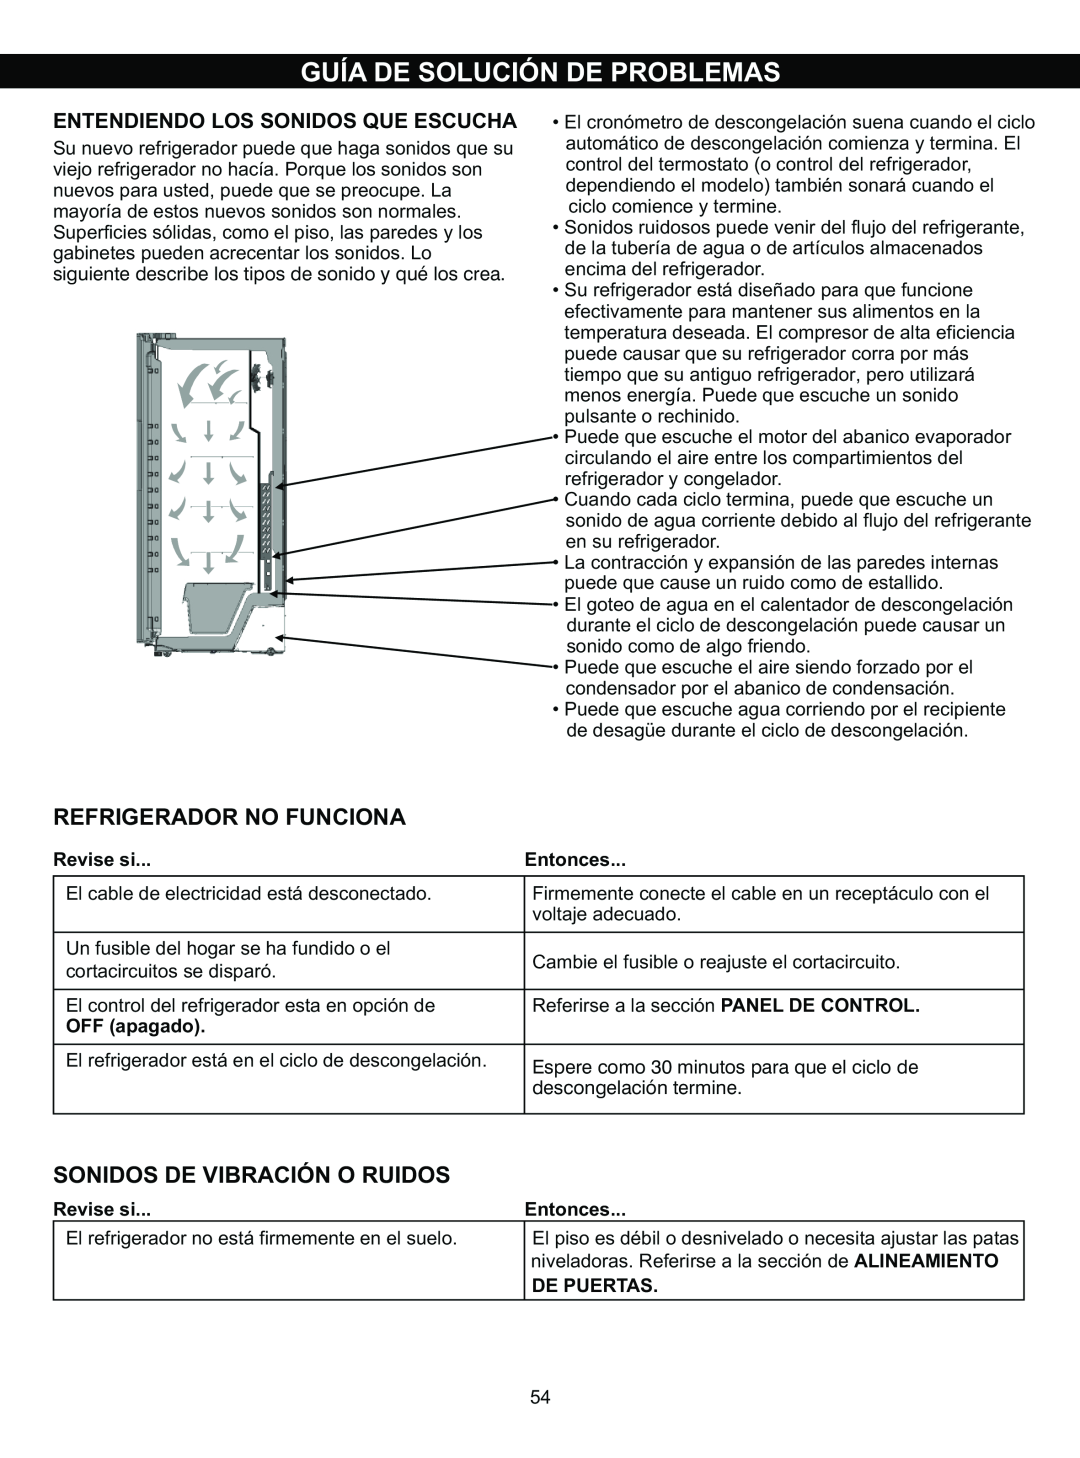 LG Electronics LSC23924ST Guía De Solución De Problemas, Refrigerador No Funciona, Sonidos De Vibración O Ruidos, Entonces 